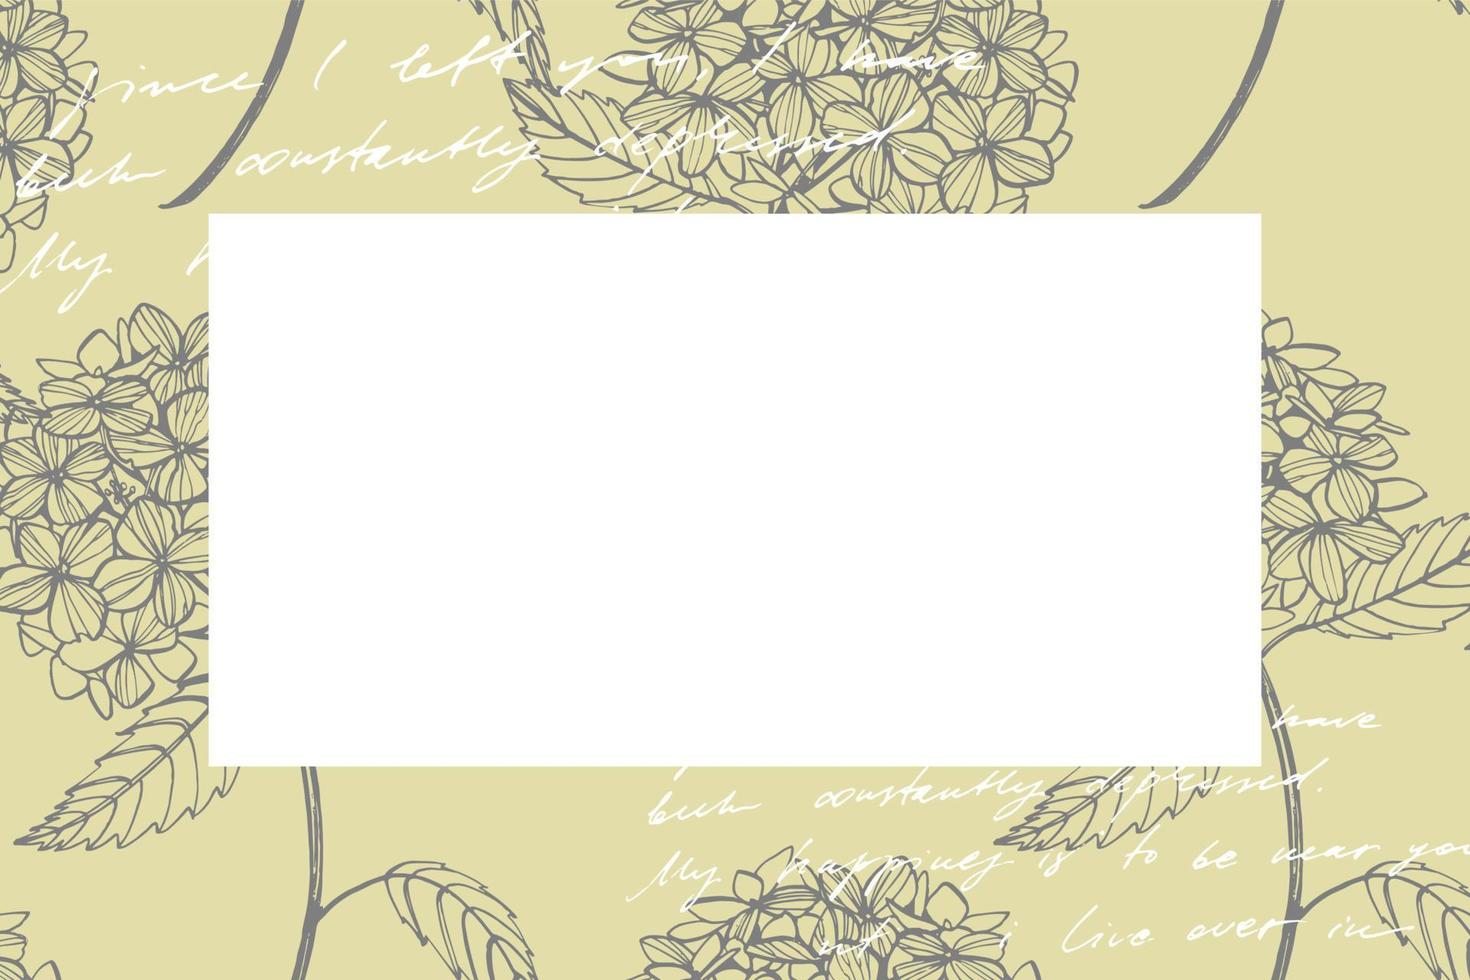 Hortensie Grafik Illustration im Jahrgang Stil. Blumen Zeichnung und skizzieren mit Strichzeichnungen auf Weiß Hintergründe. botanisch Pflanze Illustration. handgeschrieben abstrakt Text vektor